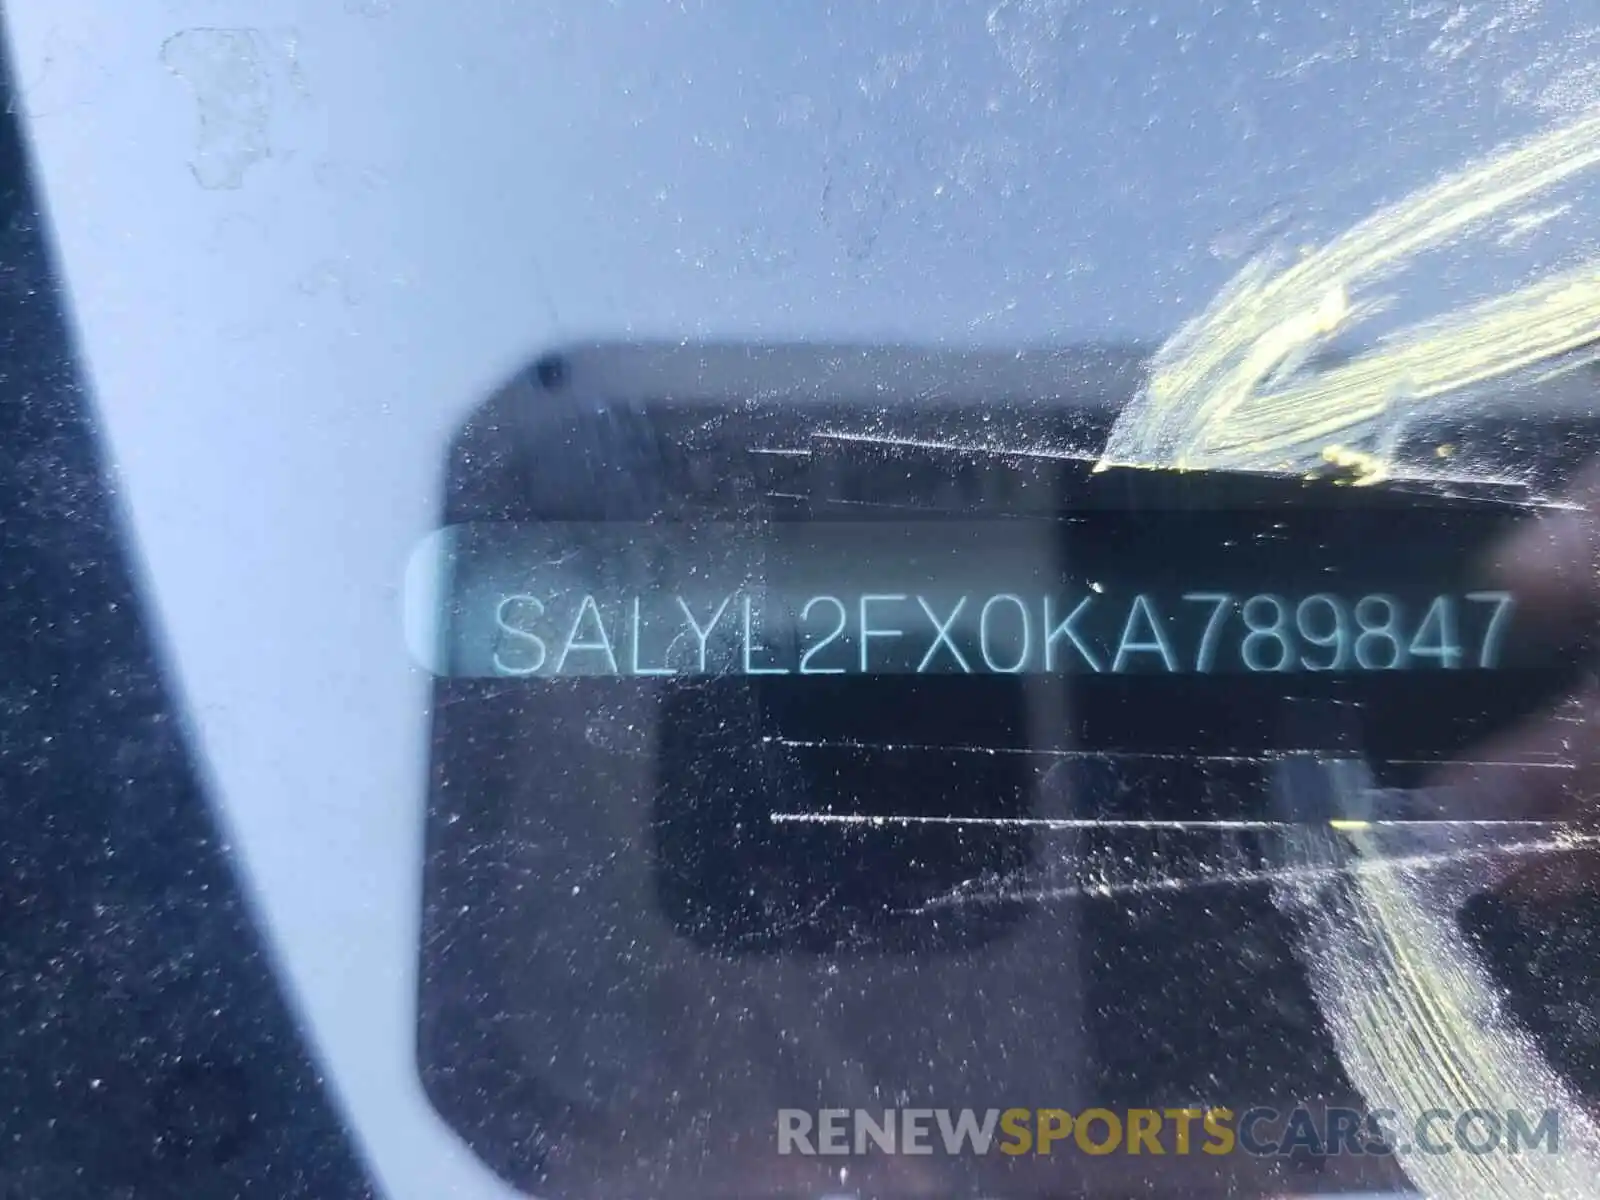 10 Photograph of a damaged car SALYL2FX0KA789847 LAND ROVER RANGEROVER 2019